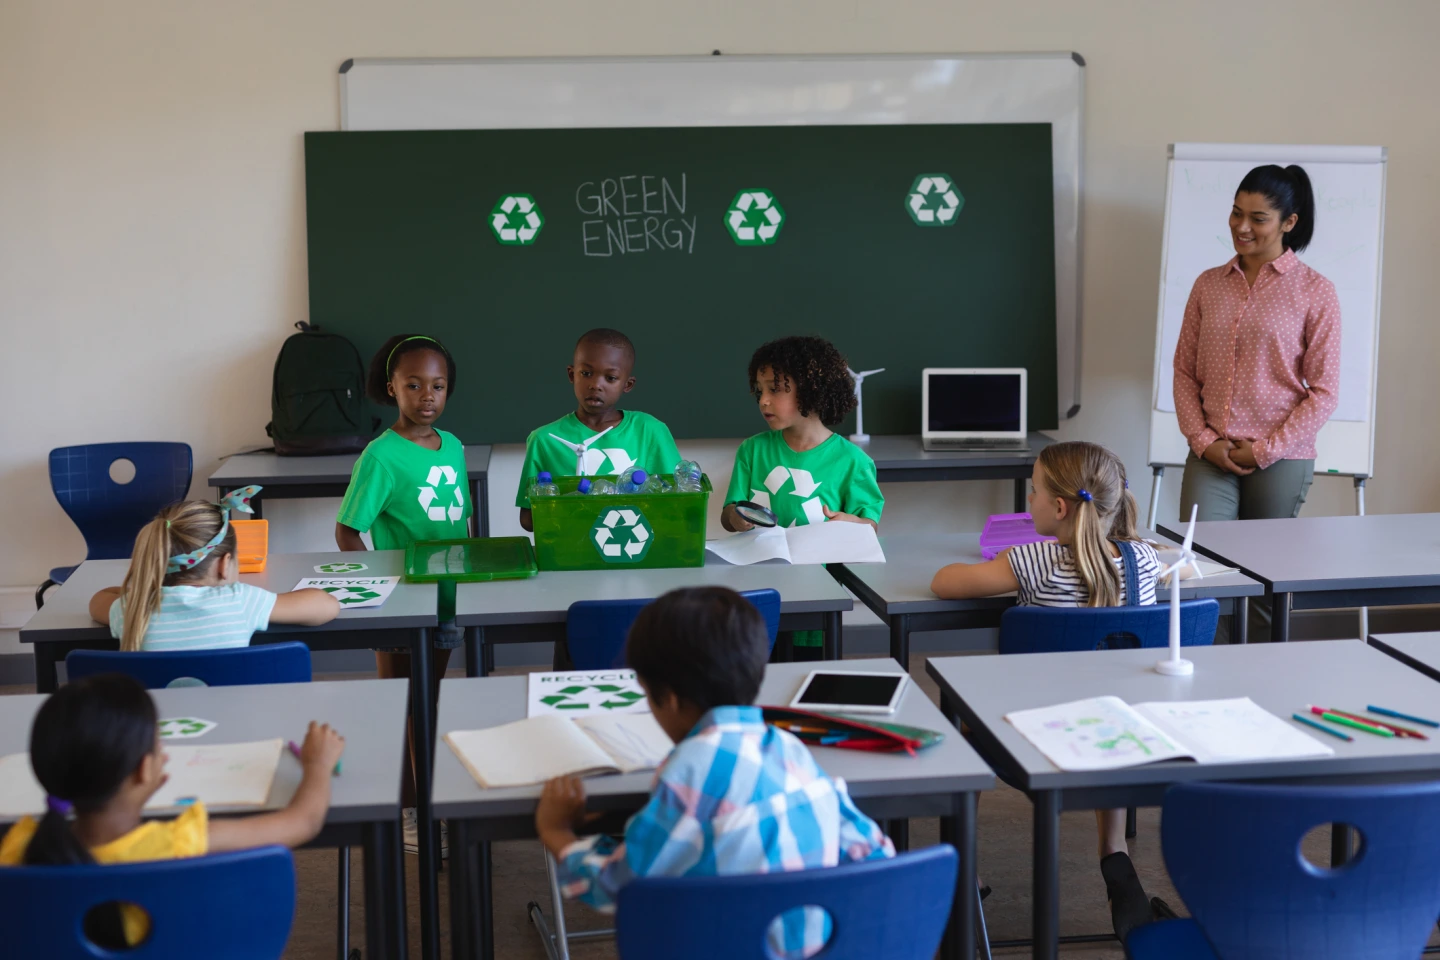 Drei Schülerinnen und Schüler in grünen T-Shirts mit aufgedrucktem weißen Recycling-Logo stehen in einem Klassenraum vor einer Tafel und halten einen Vortrag über Green Energie. Die Lehrerin und die Mitschüler hören aufmerksam zu.